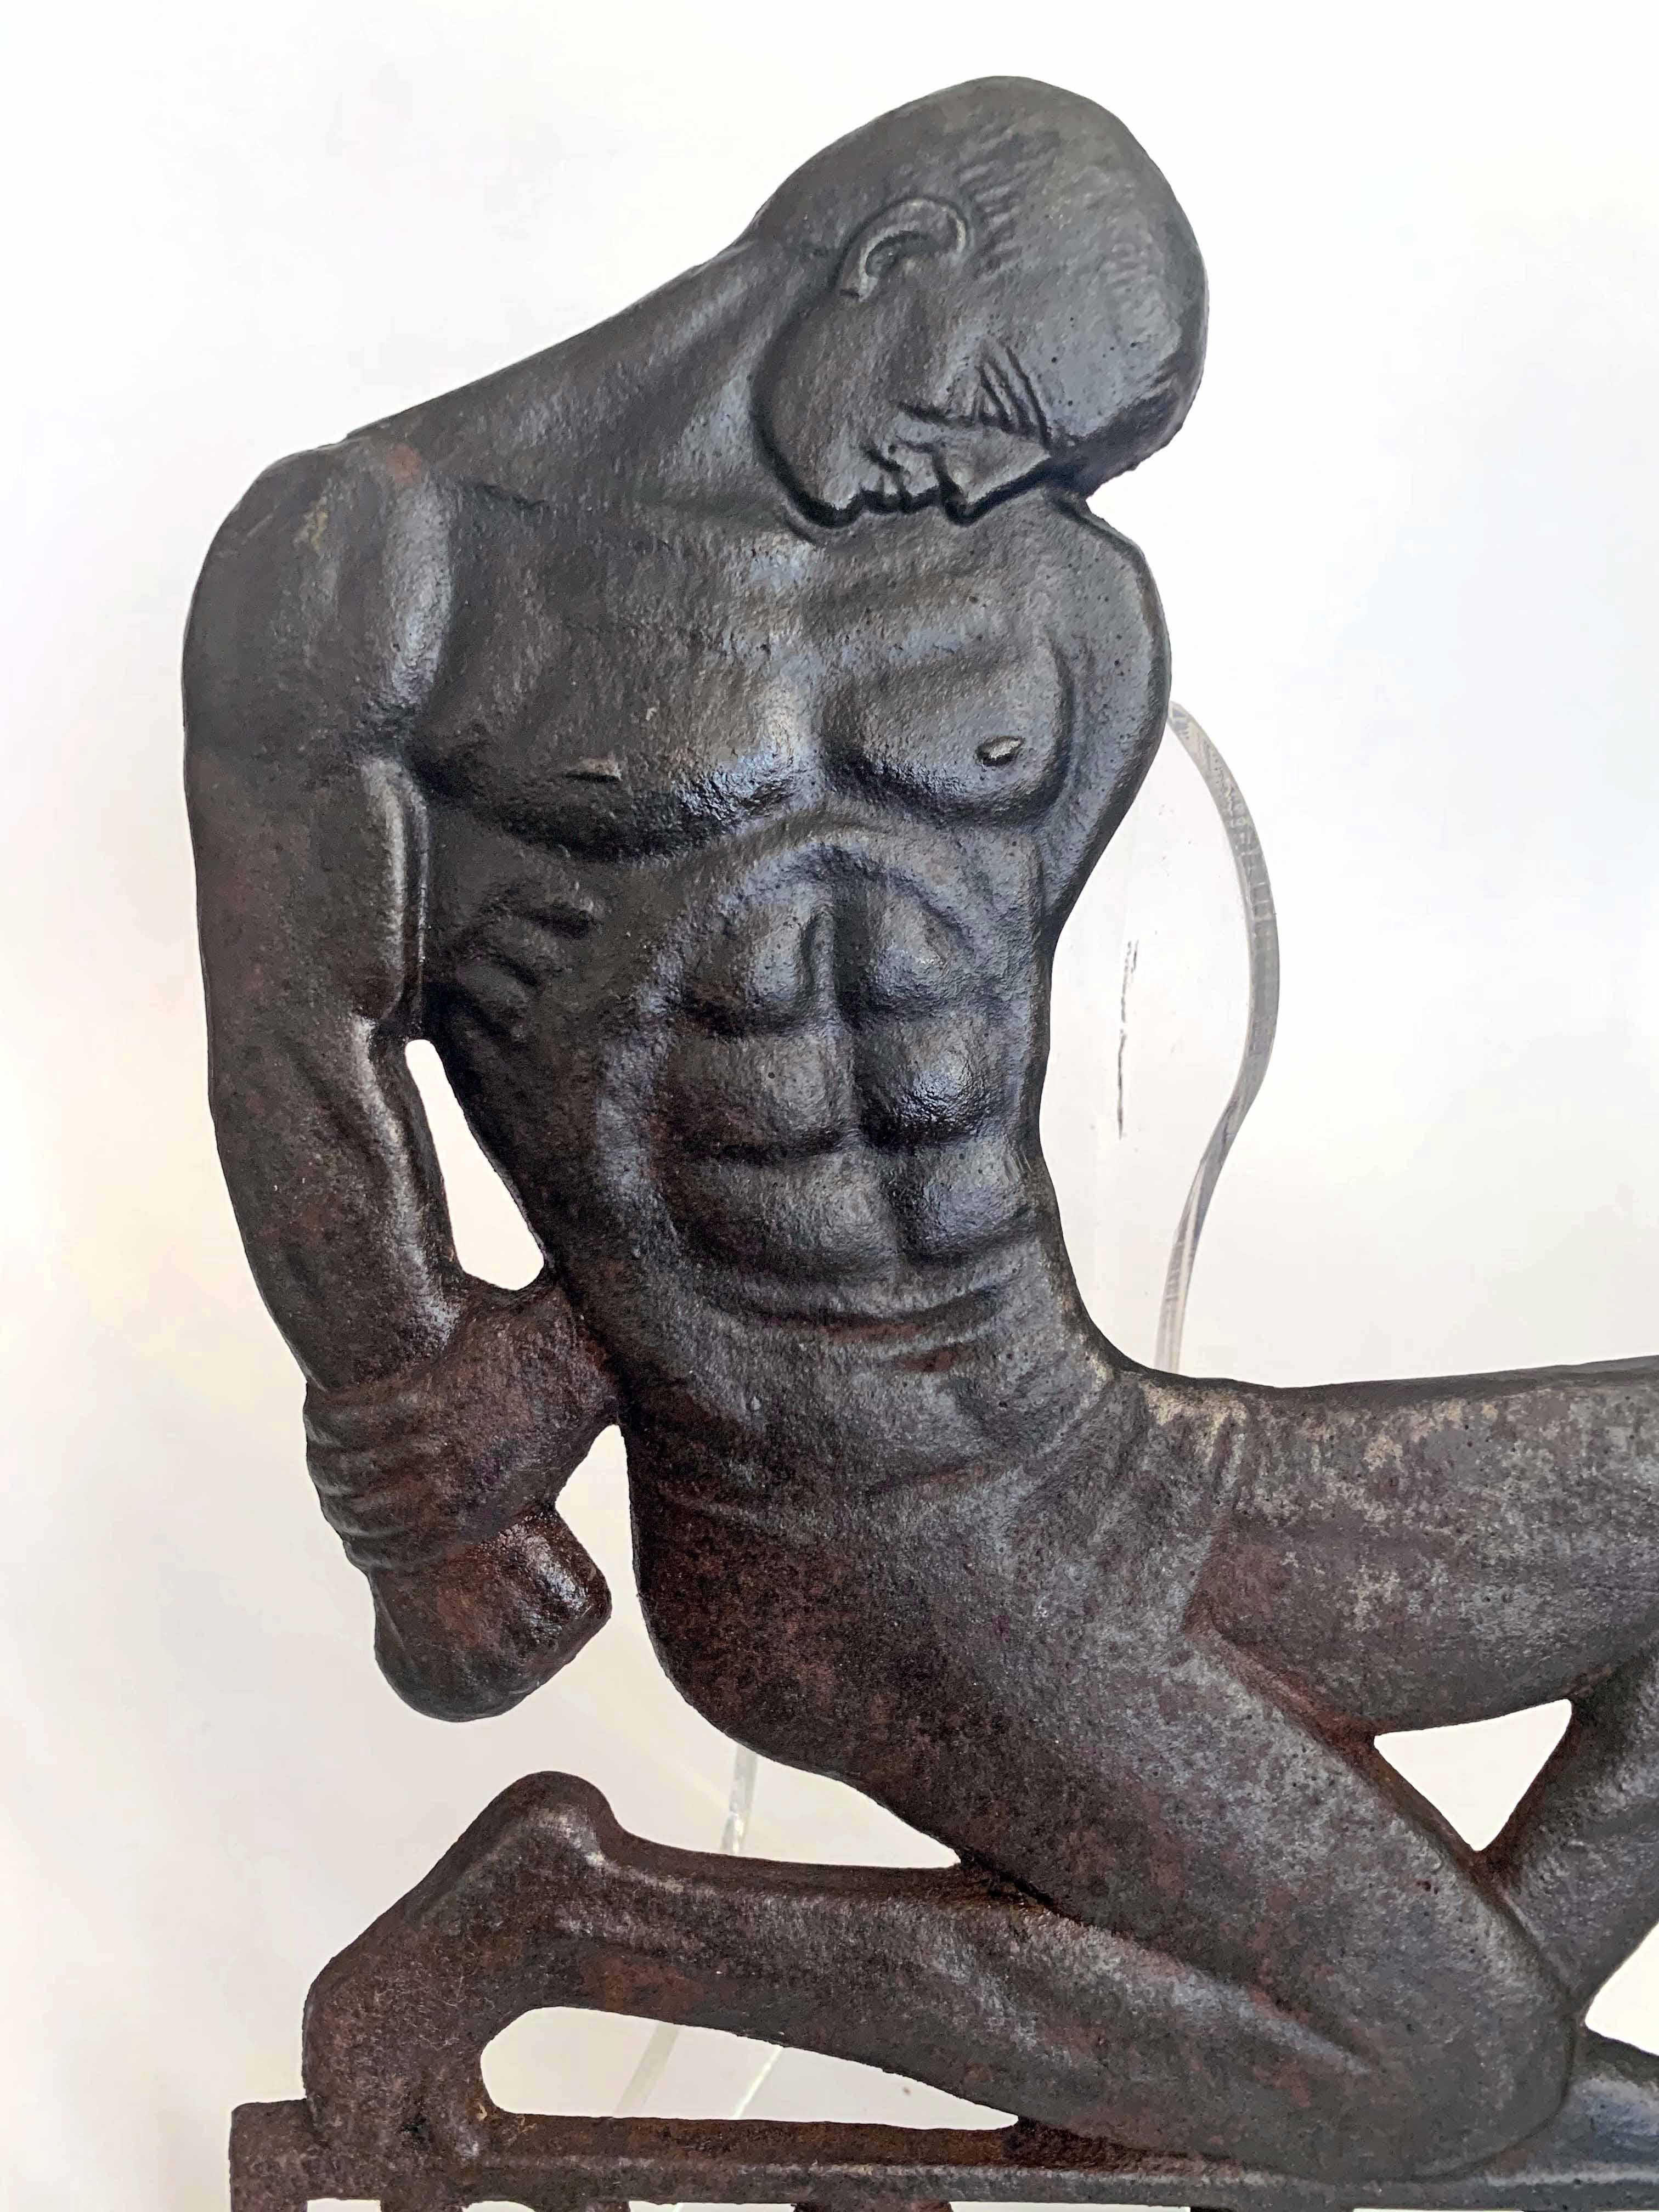 Extraordinairement rare, et peut-être unique, cette sculpture Art déco-moderne d'un homme nu agenouillé, représentant clairement les travailleurs de la région allemande de la Sarre, où l'on exploite le charbon et où l'on fabrique des produits